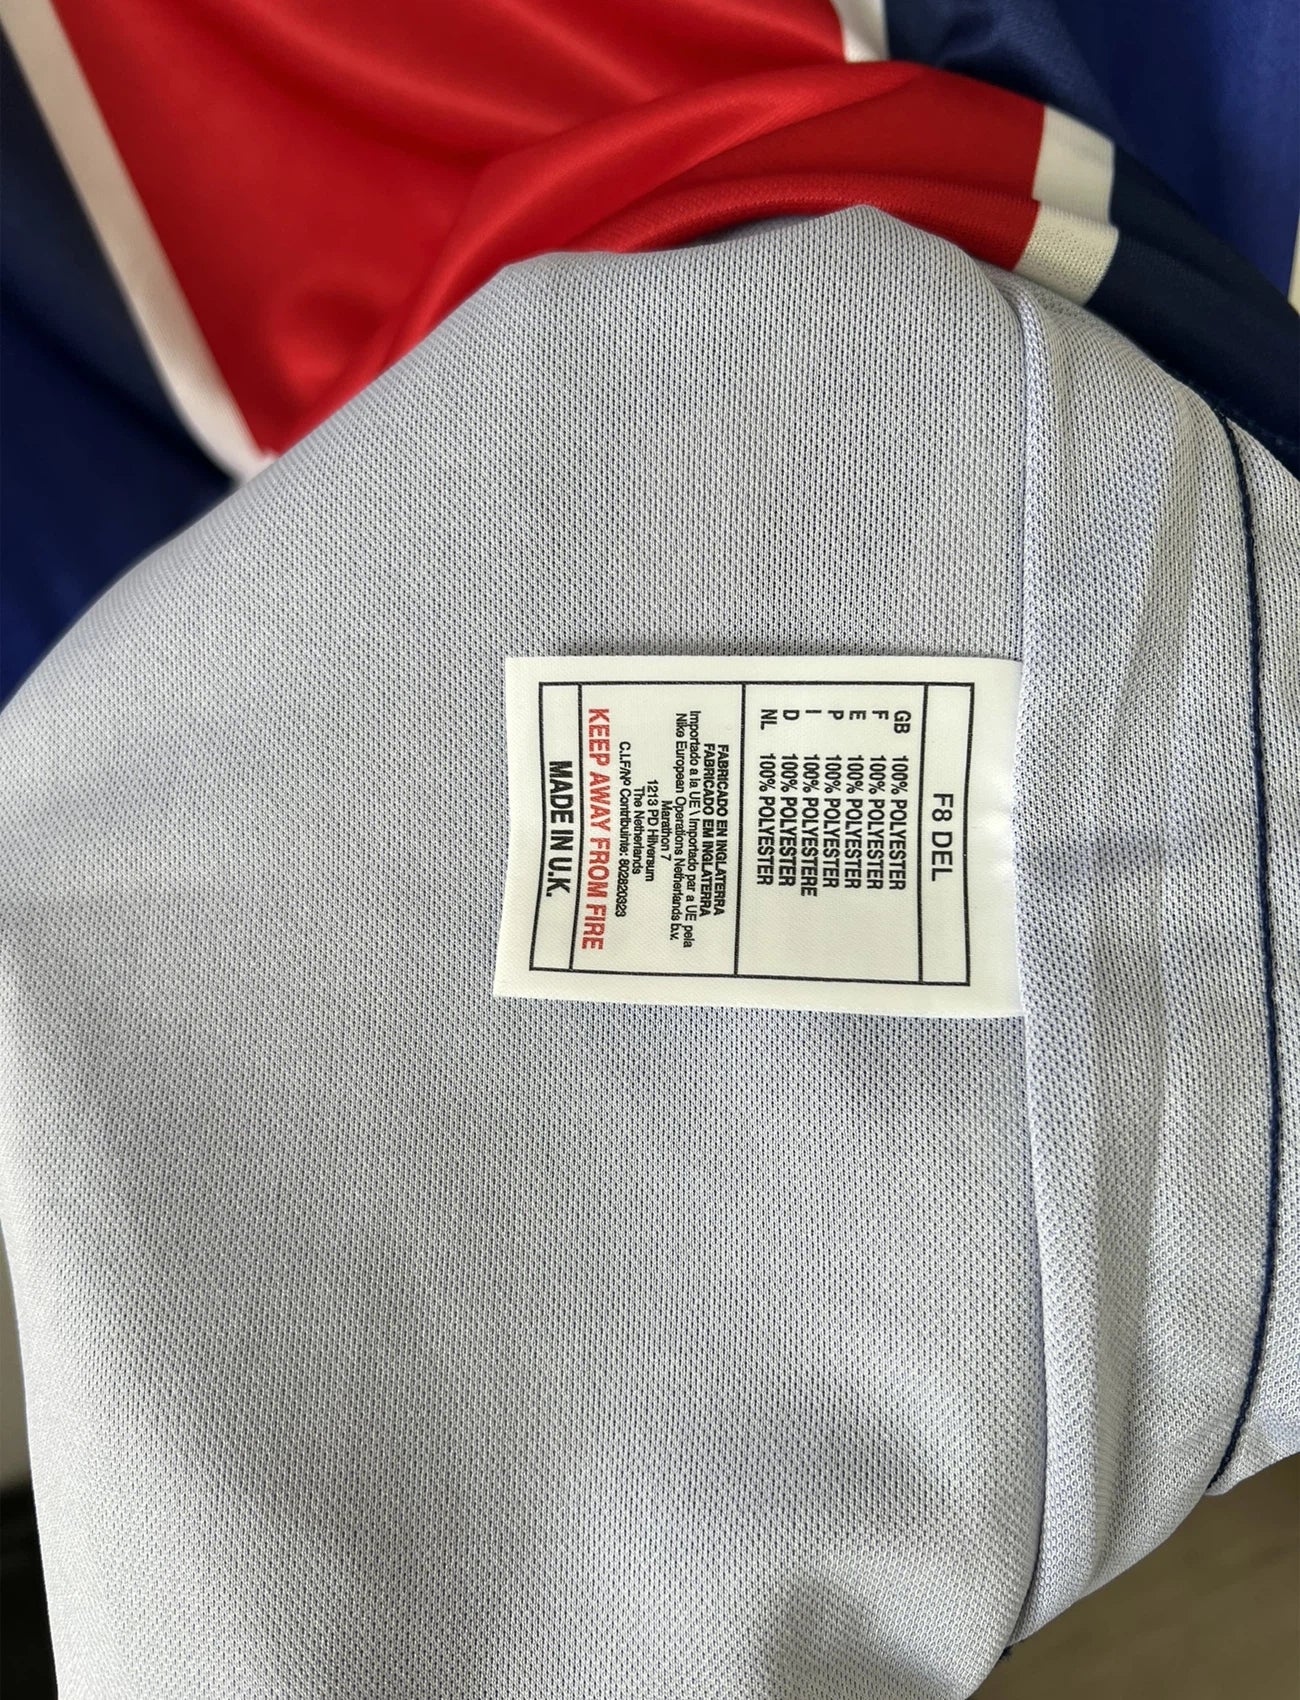 Maillot de foot vintage domicile du PSG de la saison 1998/1999. Le maillot est de couleur bleu blanc et rouge. On peut retrouver l'équipementier nike et le sponsor opel. Il s'agit d'un maillot authentique d'époque.